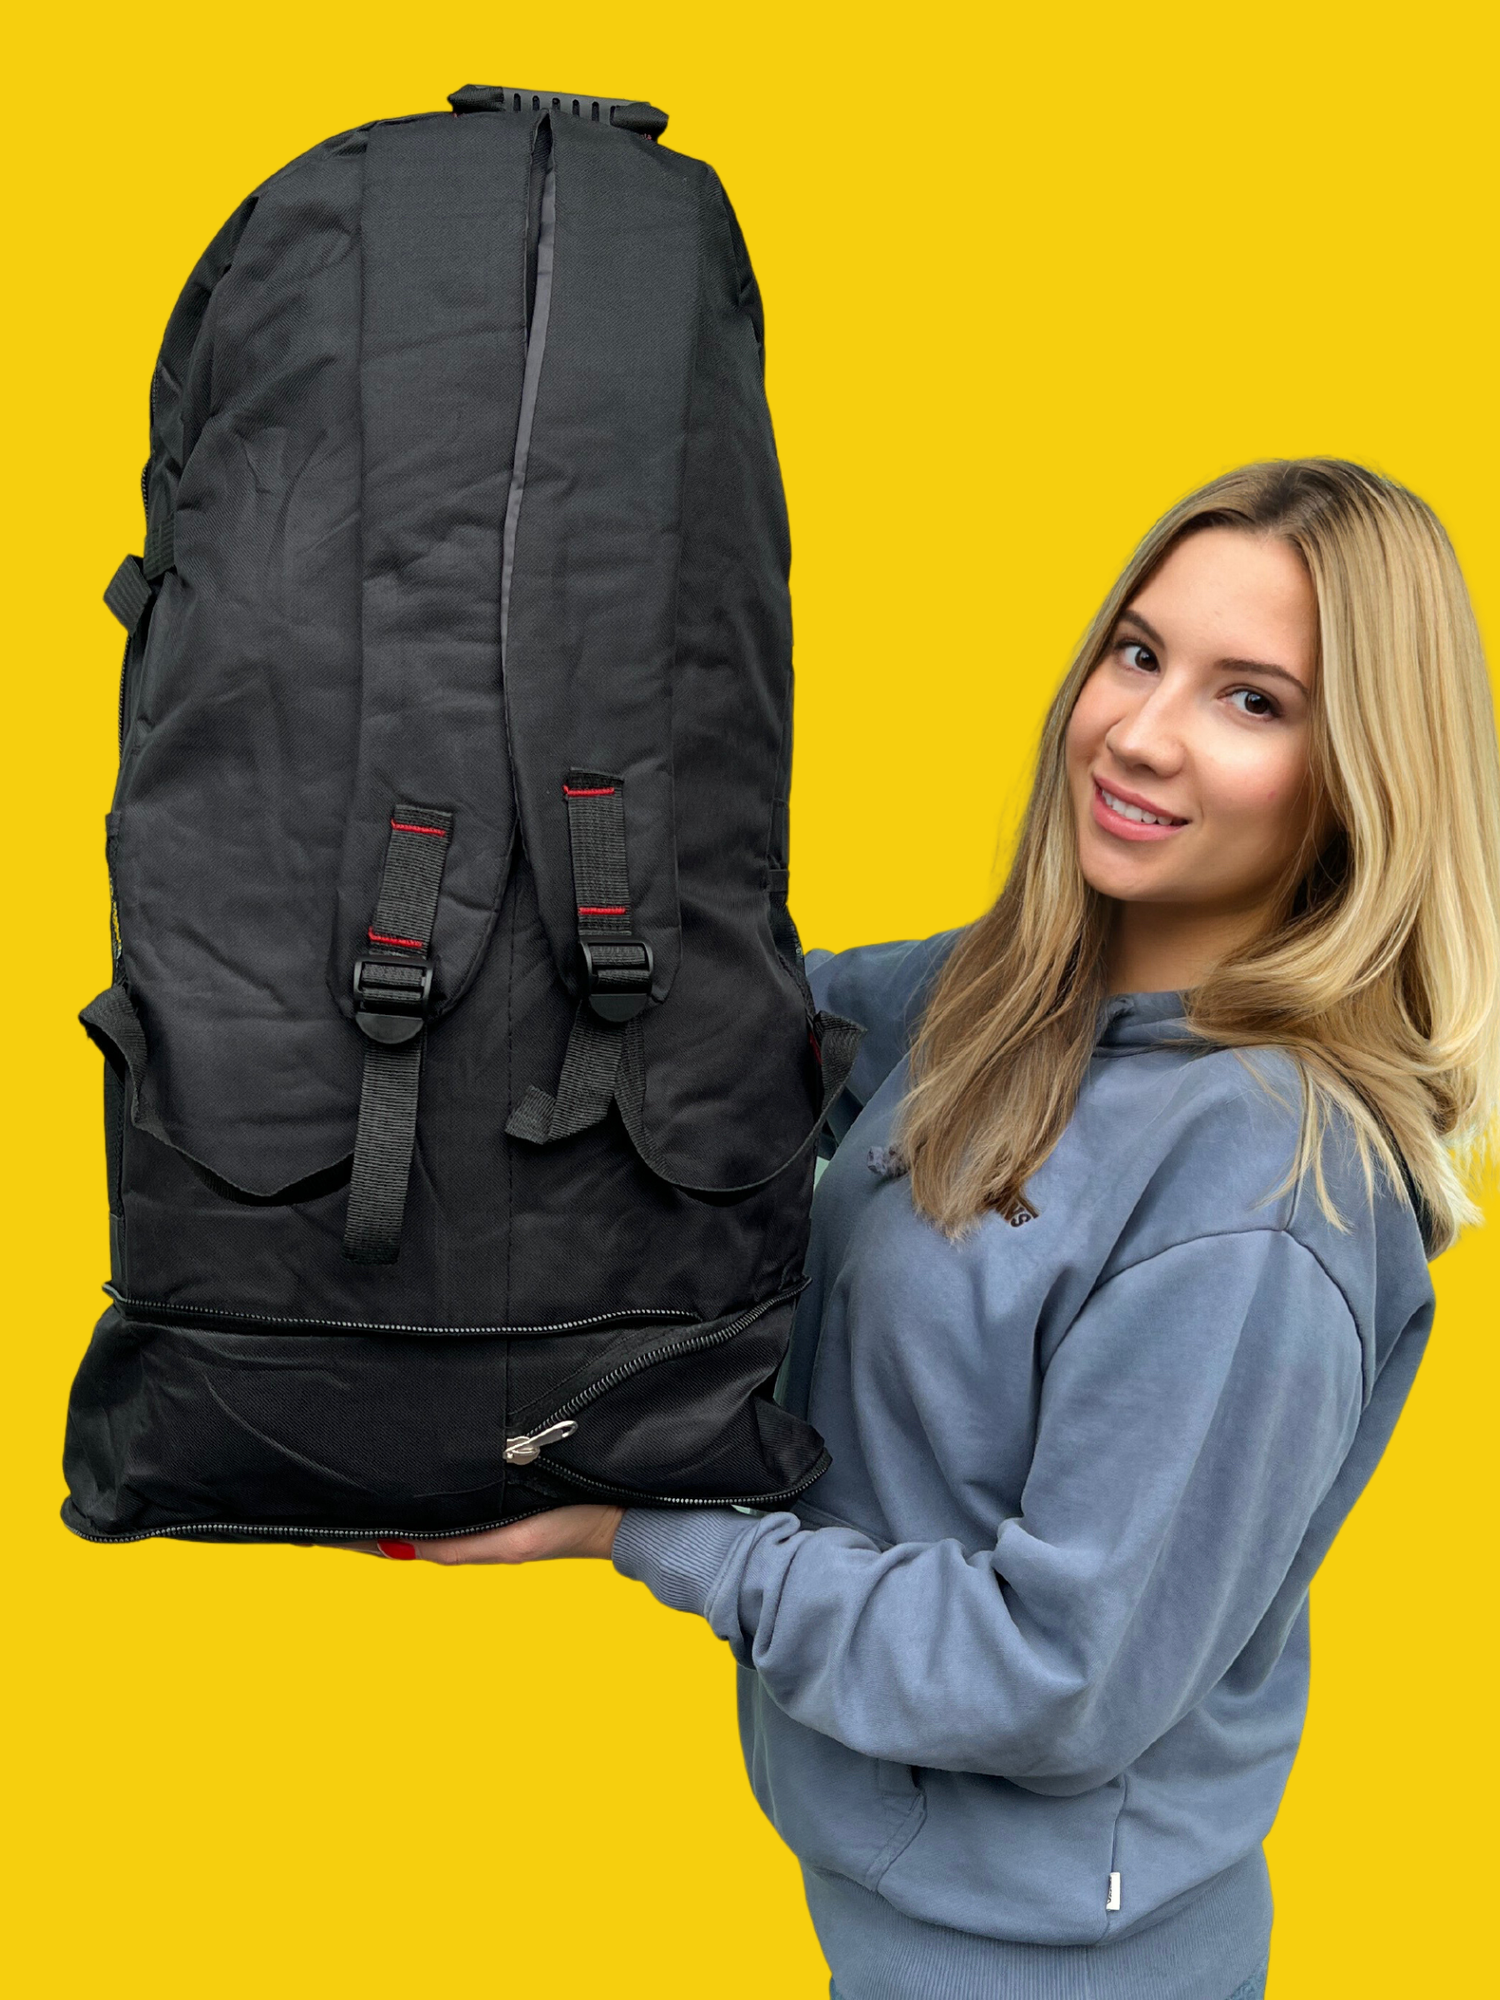 Рюкзак туристический 70 л, черный, рюкзак мужской женский Походный, спортивный, баул, для охоты, рыбалки, туризма